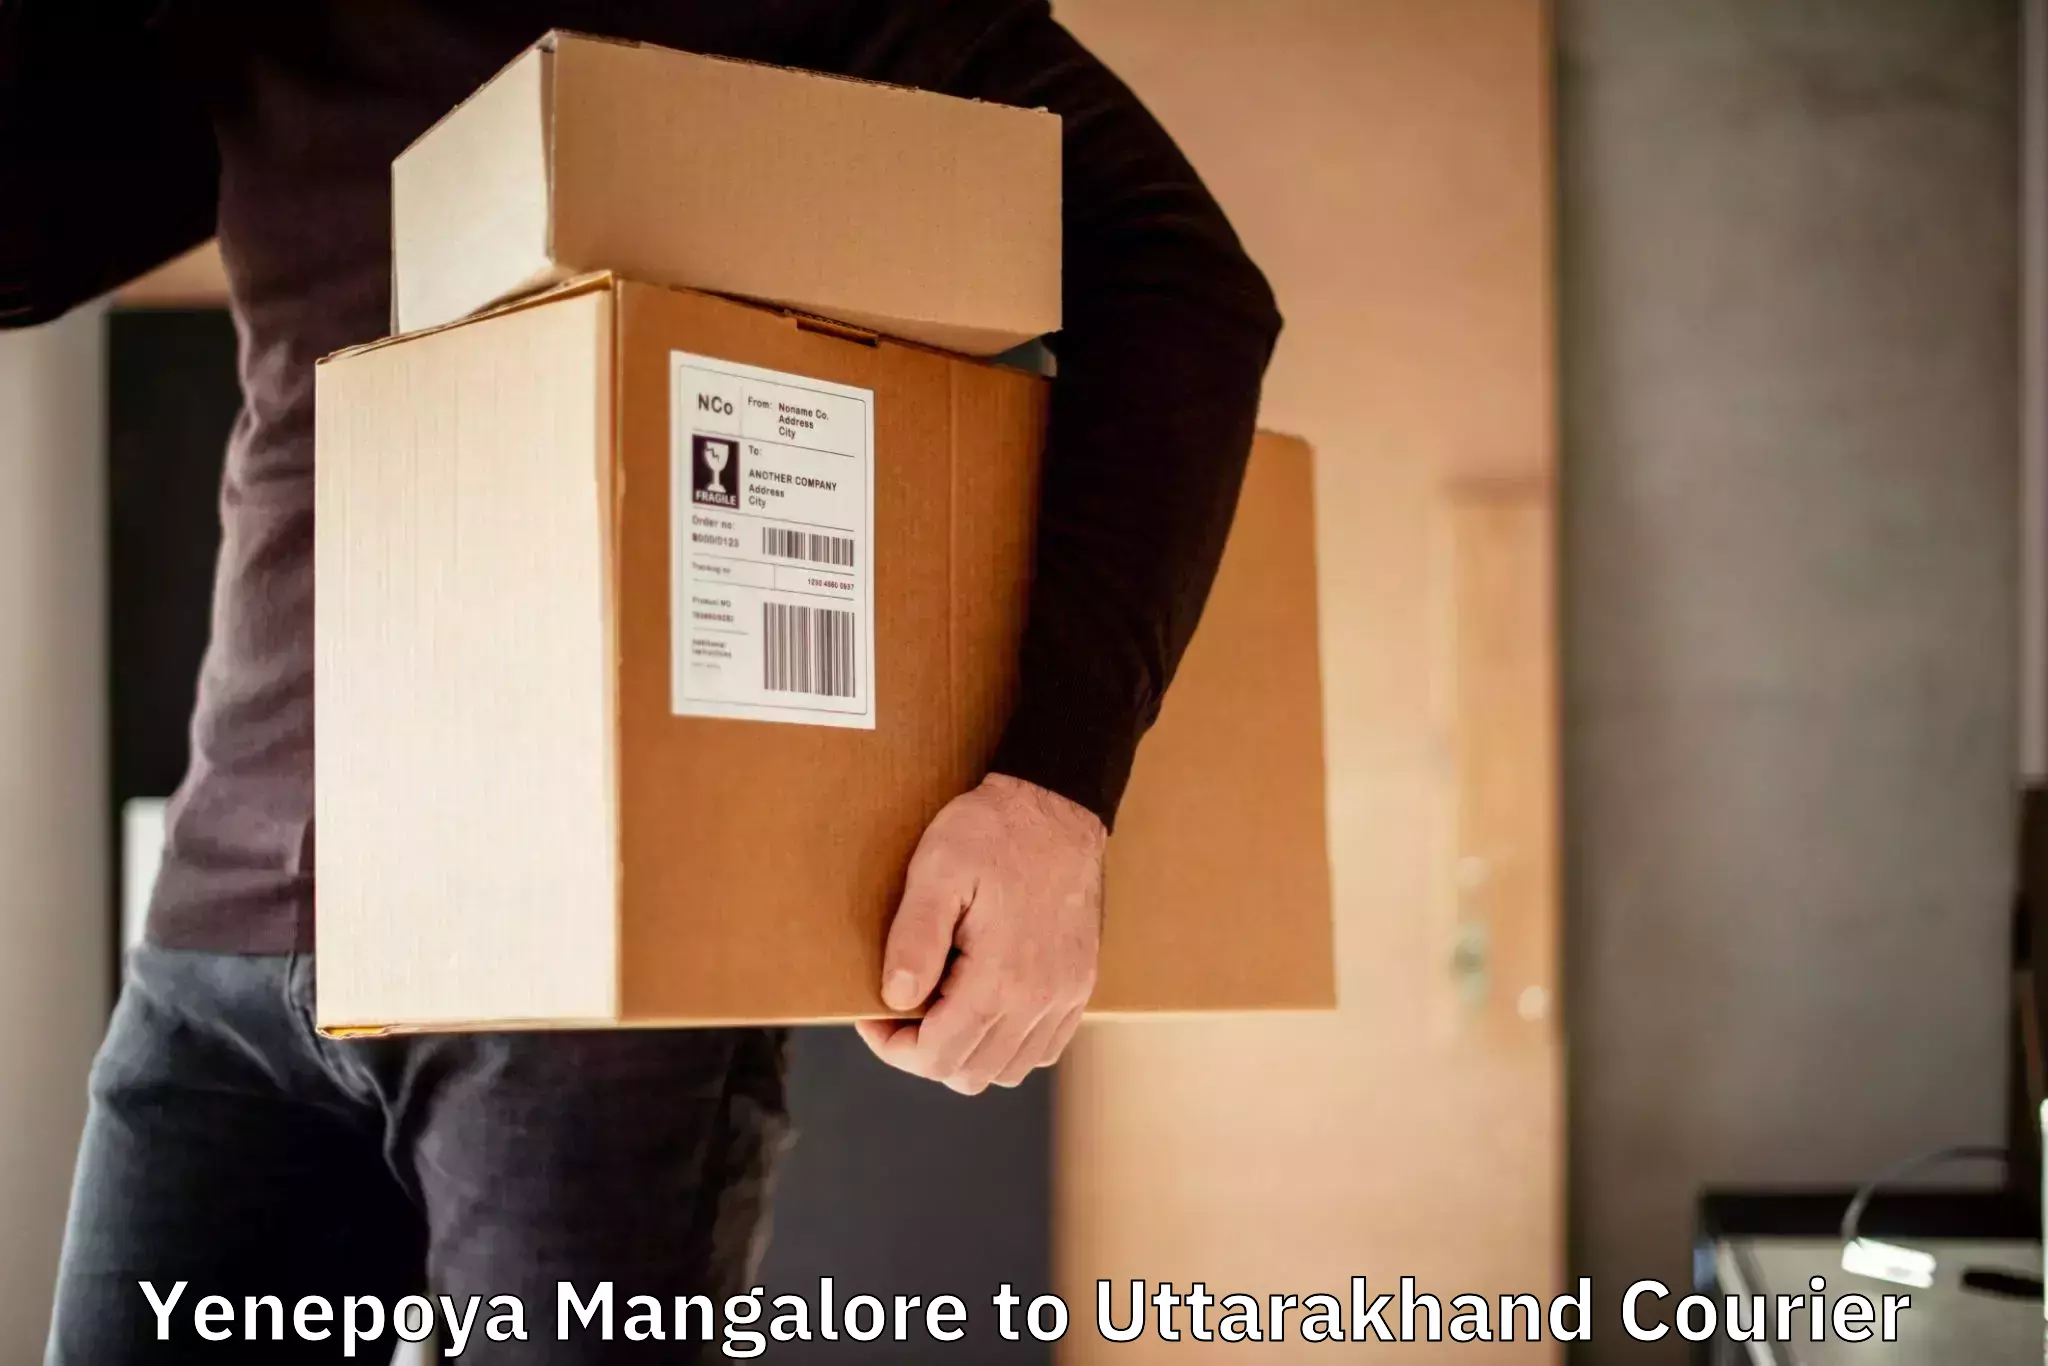 Fast-track shipping solutions Yenepoya Mangalore to Uttarakhand